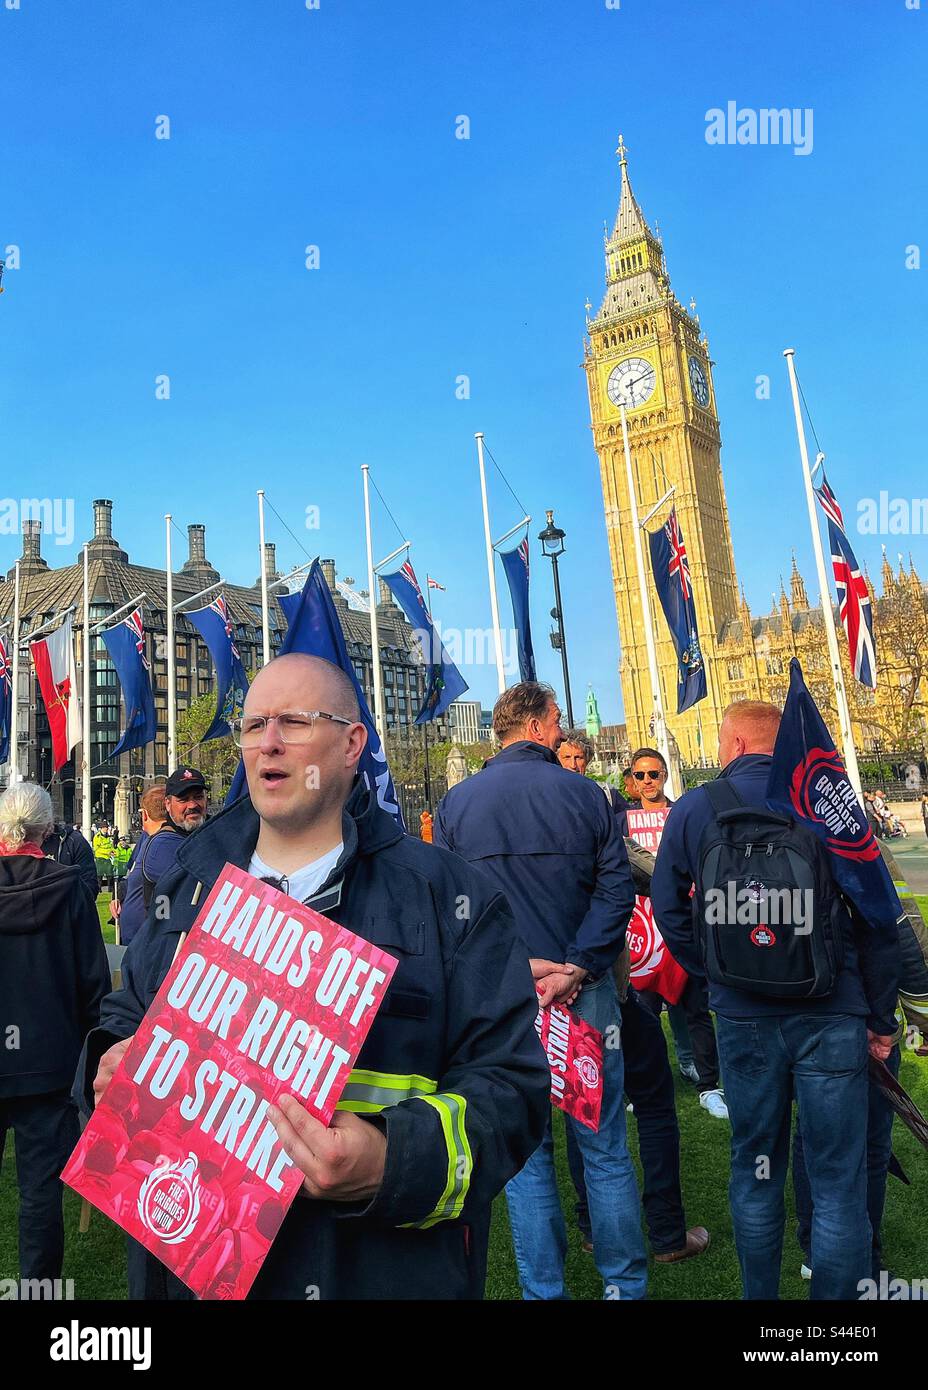 Les pompiers disent que nous nous démettons de notre droit de grève sur la place du Parlement, à Londres, lorsqu'un projet de loi est présenté Banque D'Images